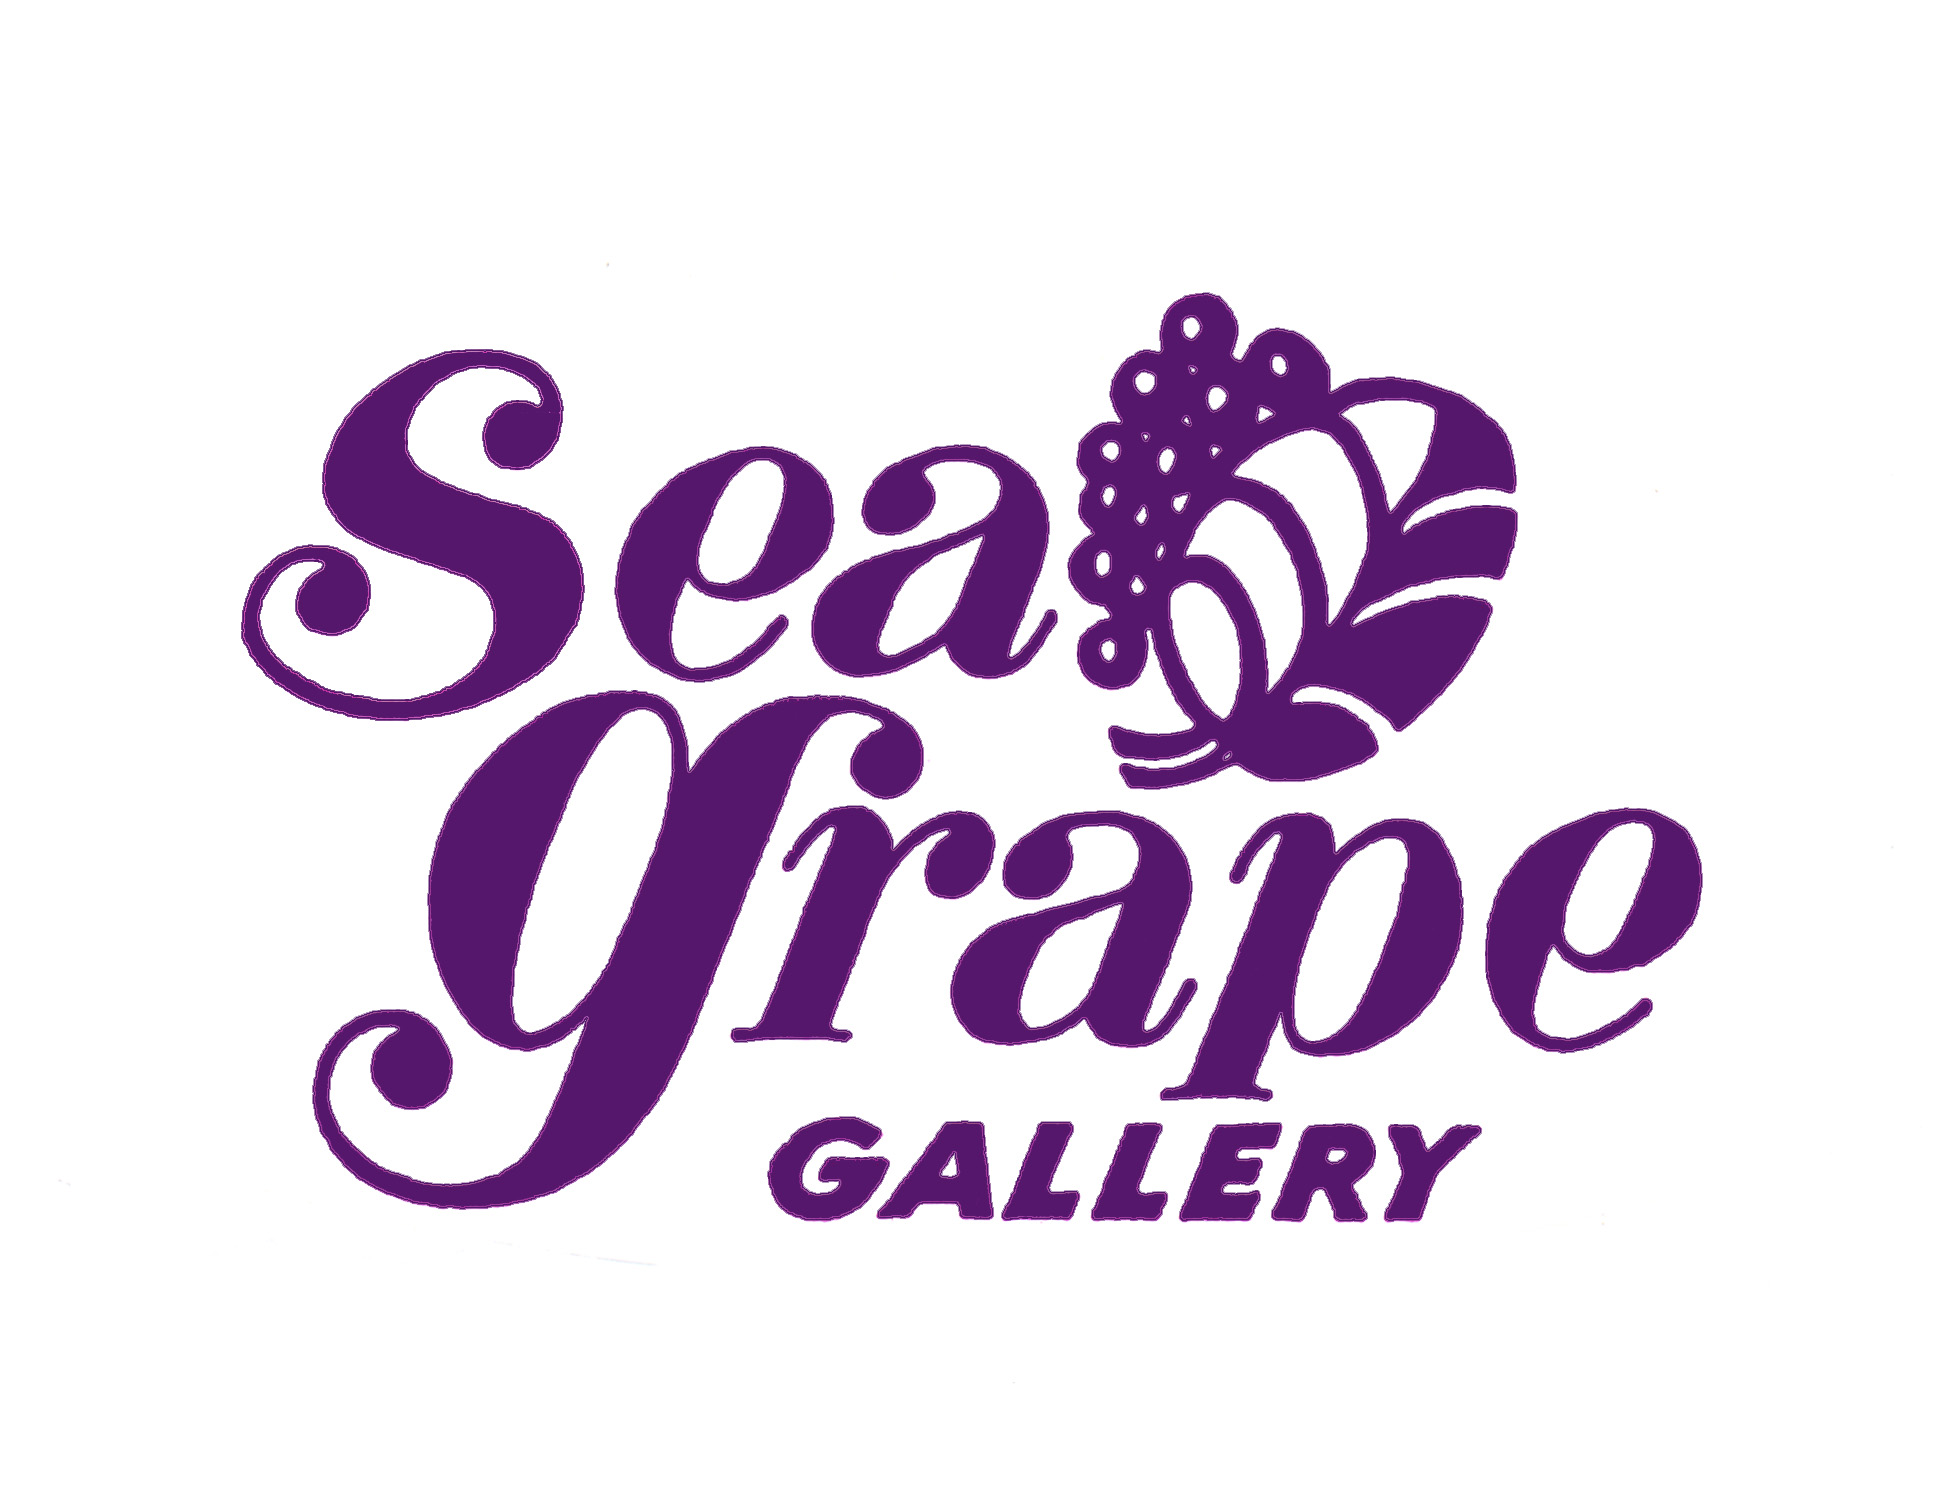 Sea Grape Gallery